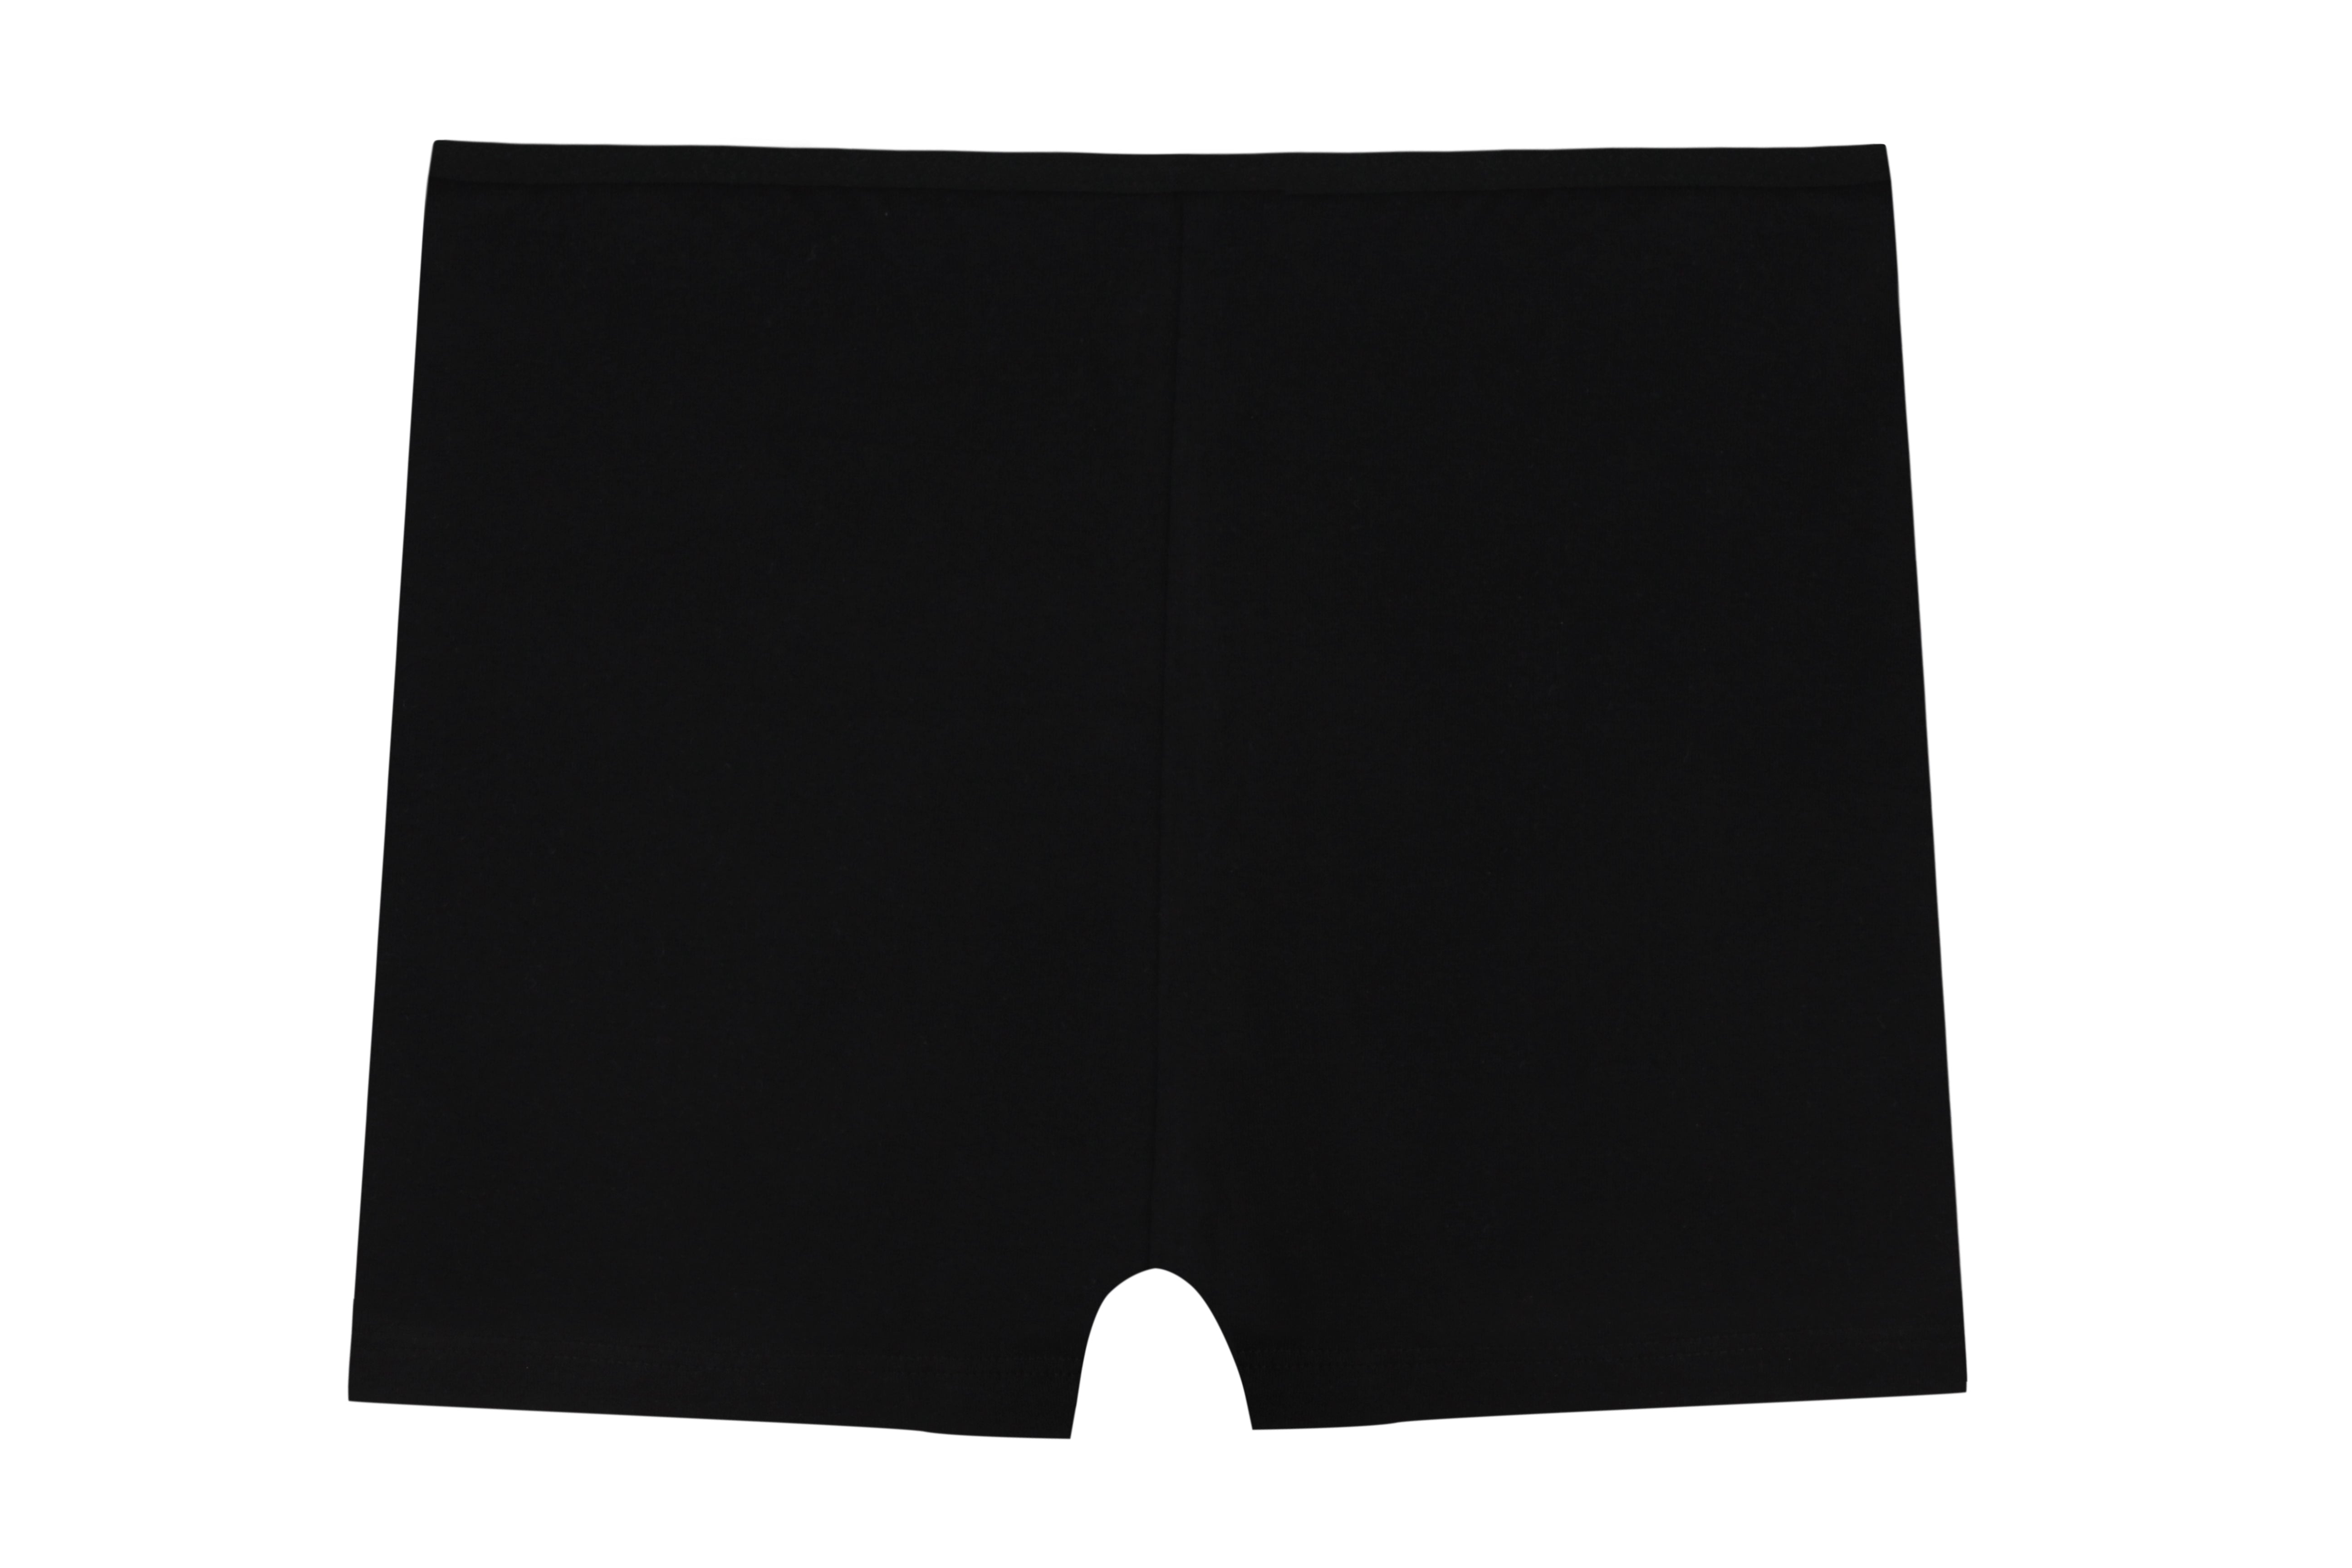 Women's Boxer Shorts Underwear